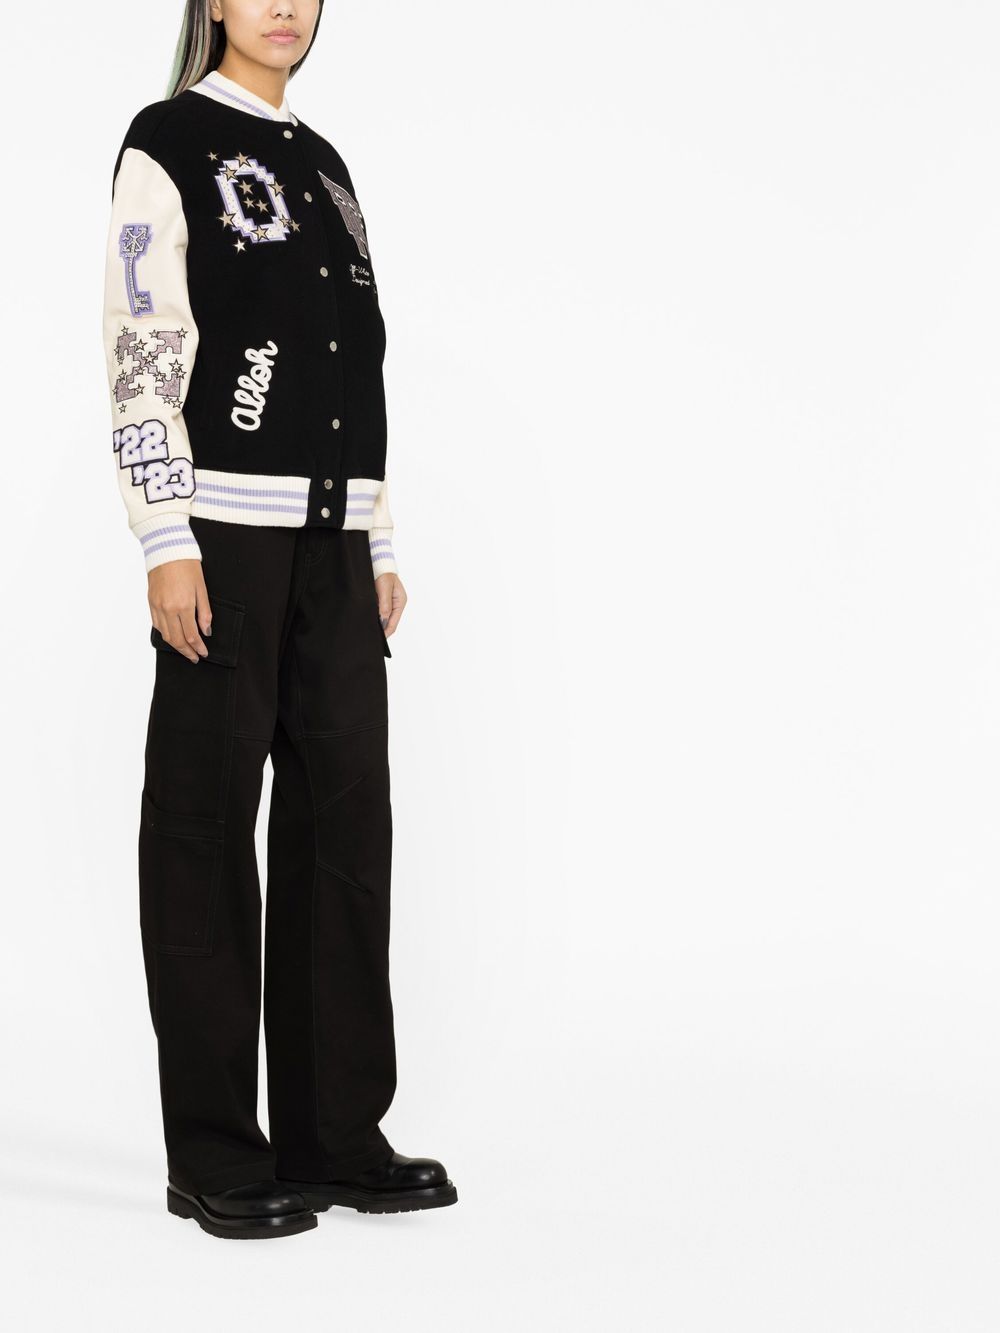 Louis Vuitton Patch Varsity Jacket